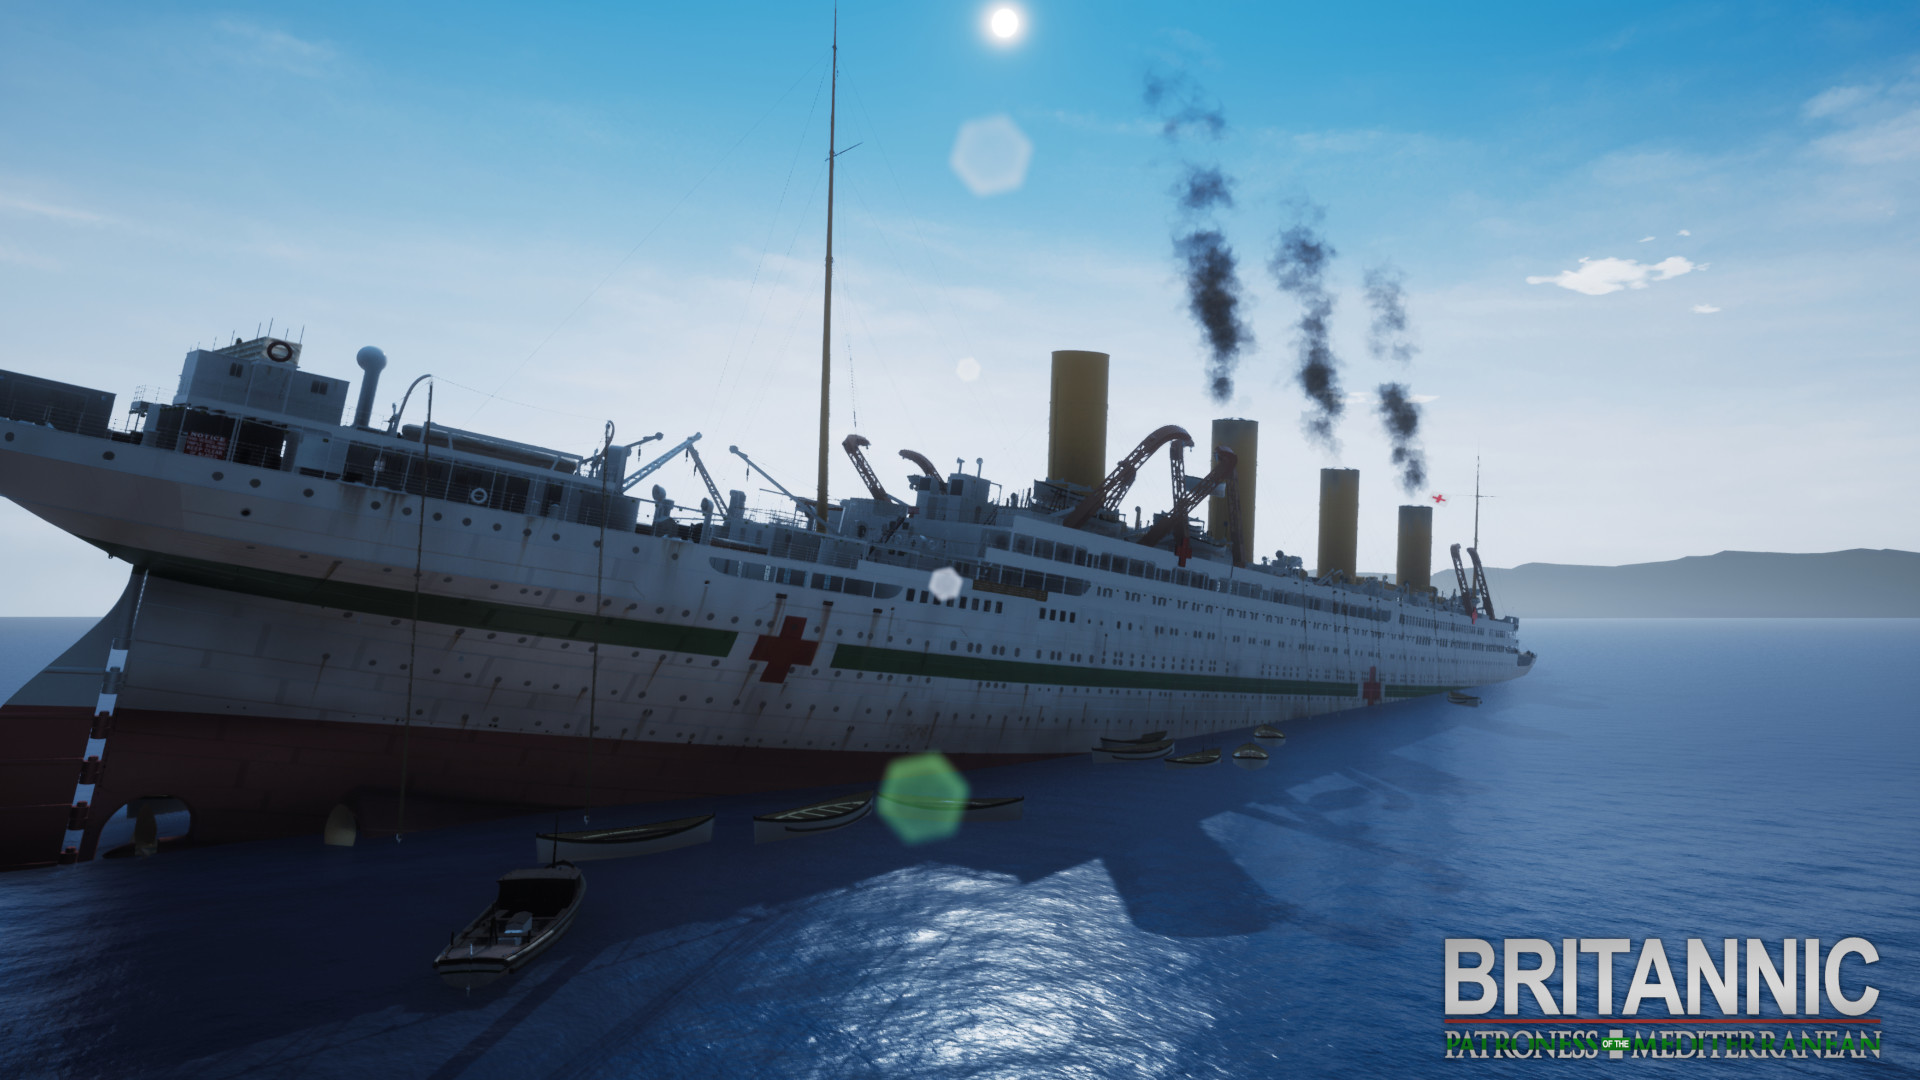 Britannic Patroness Of The Mediterranean On Steam - roblox britannic sinking ship teaser